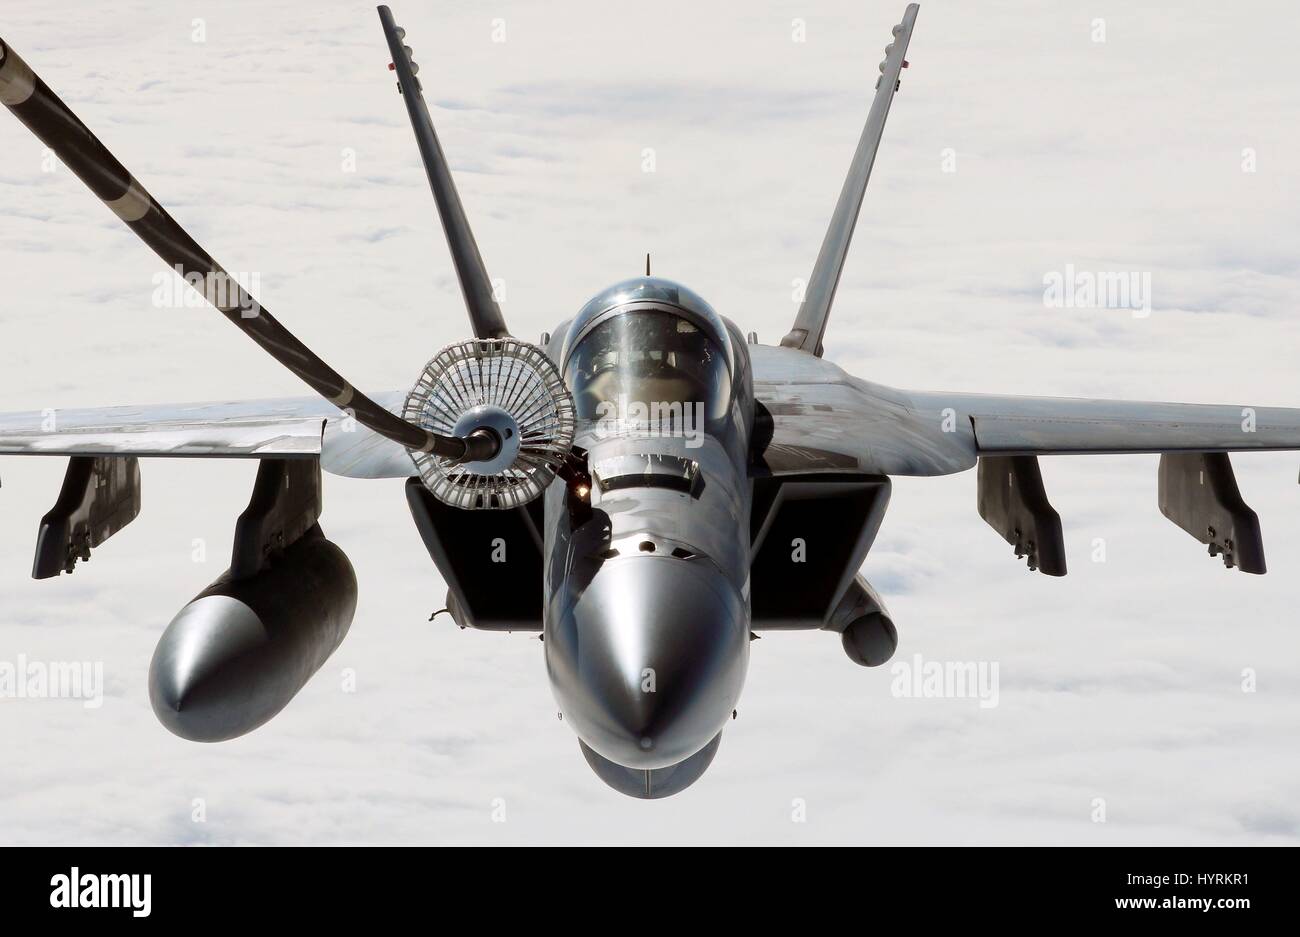 La Marina estadounidense F/A-18E Super Hornet aviones de combate se reposte en vuelo por un USAF KC-10A de repostaje de aviones cisterna, el 26 de febrero de 2017 sobre el Océano Pacífico. Foto de stock